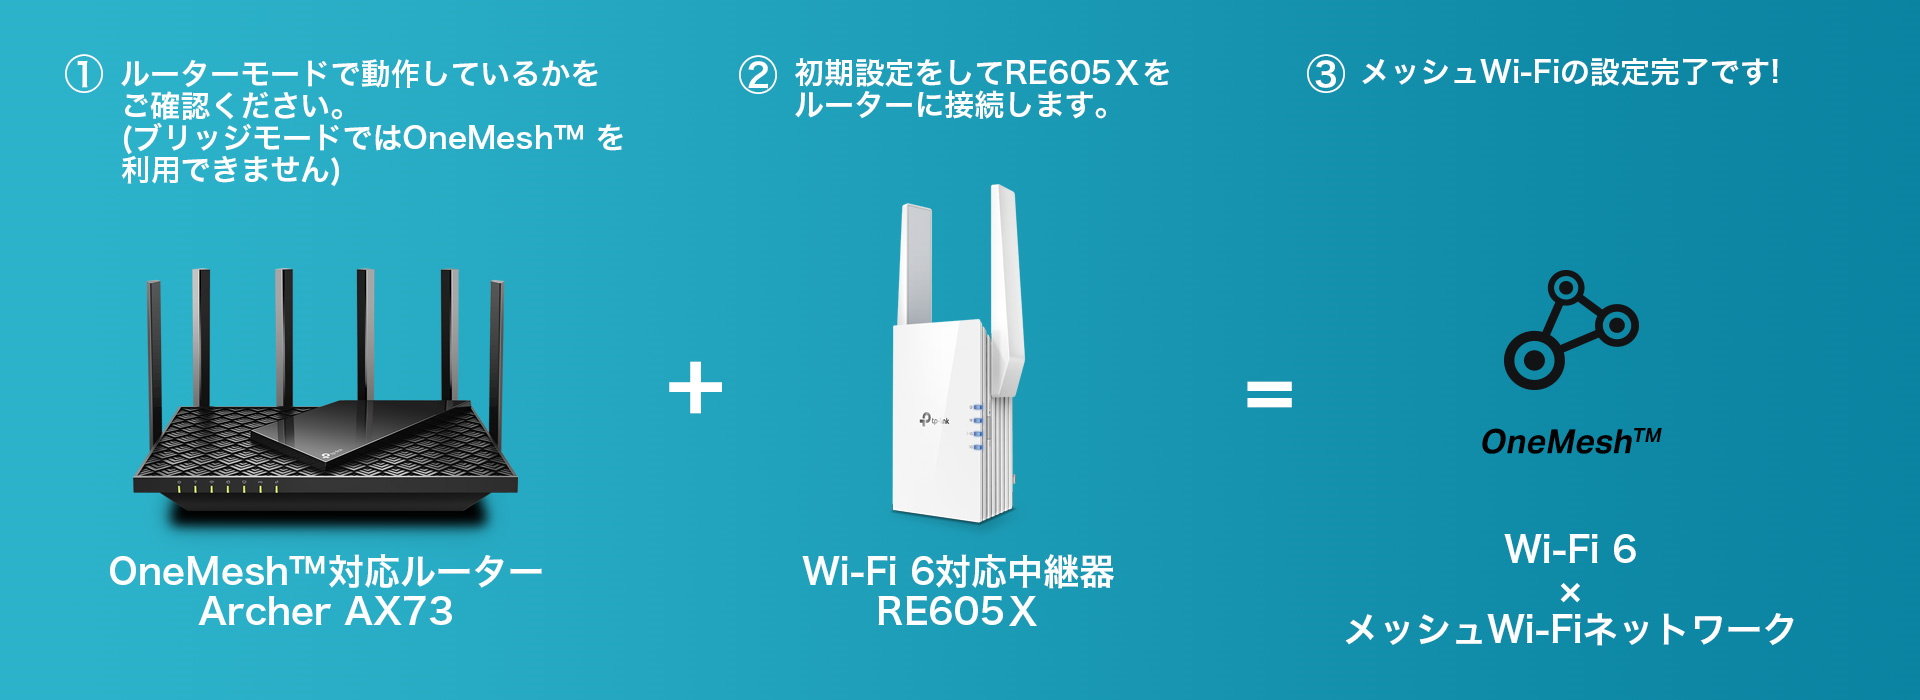 自宅のネットを速くしたいならこれ！ 1.4万円台で買えるTP-Linkの良コスパWi-Fi 6ルーター「Archer AX73」の魅力に迫る